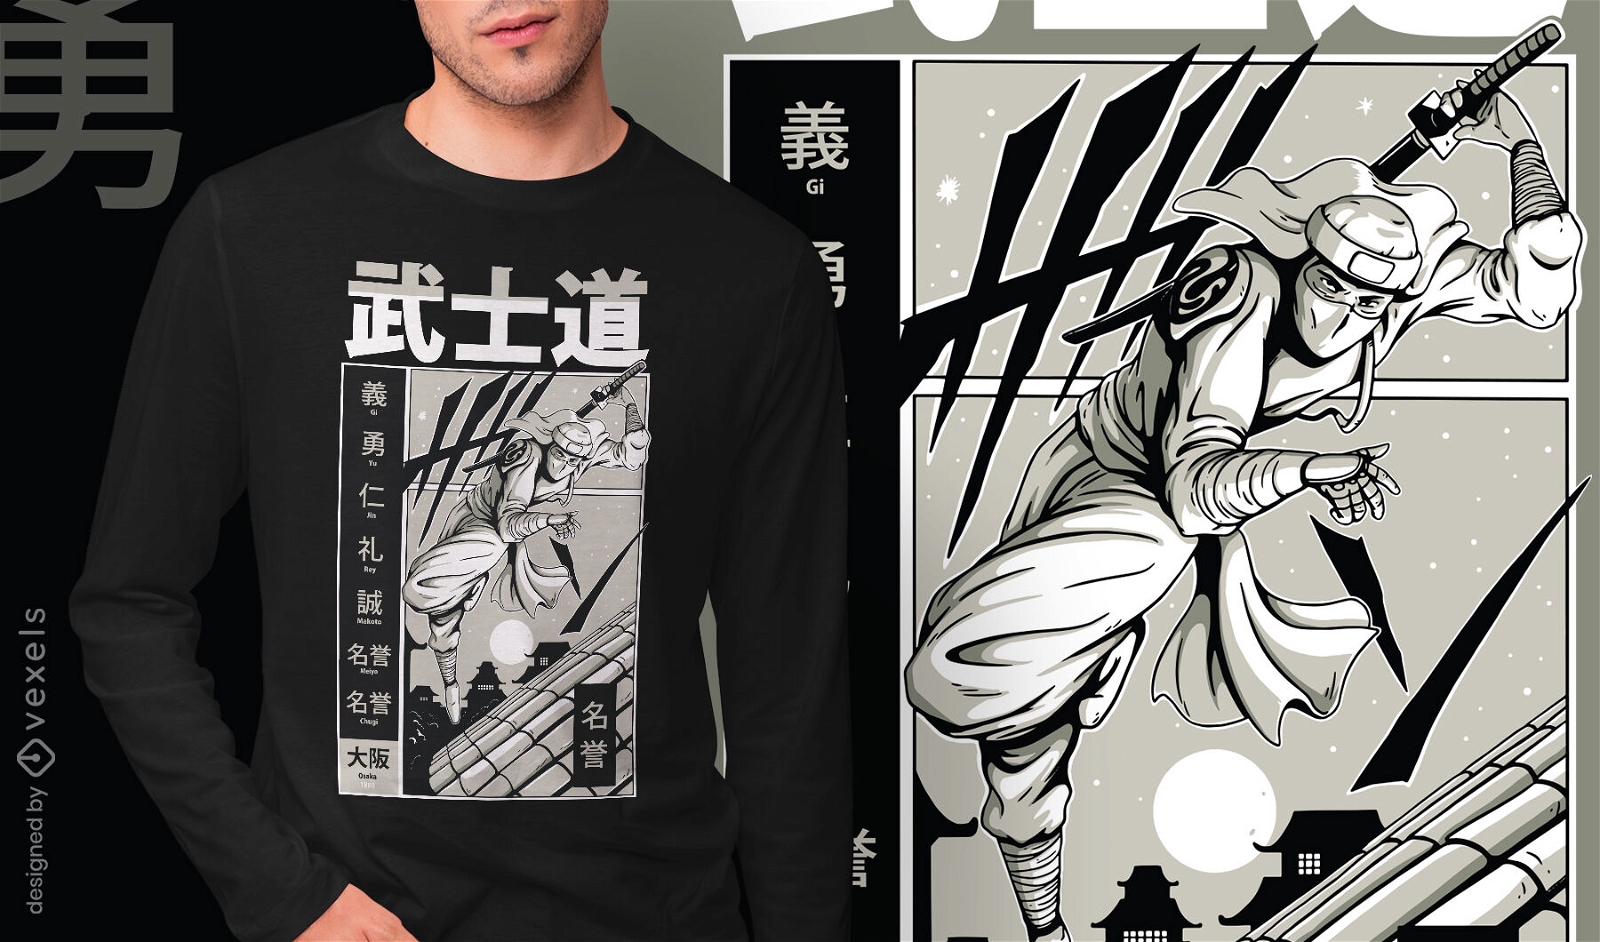 Samurai con dise?o de camiseta de salto katana.